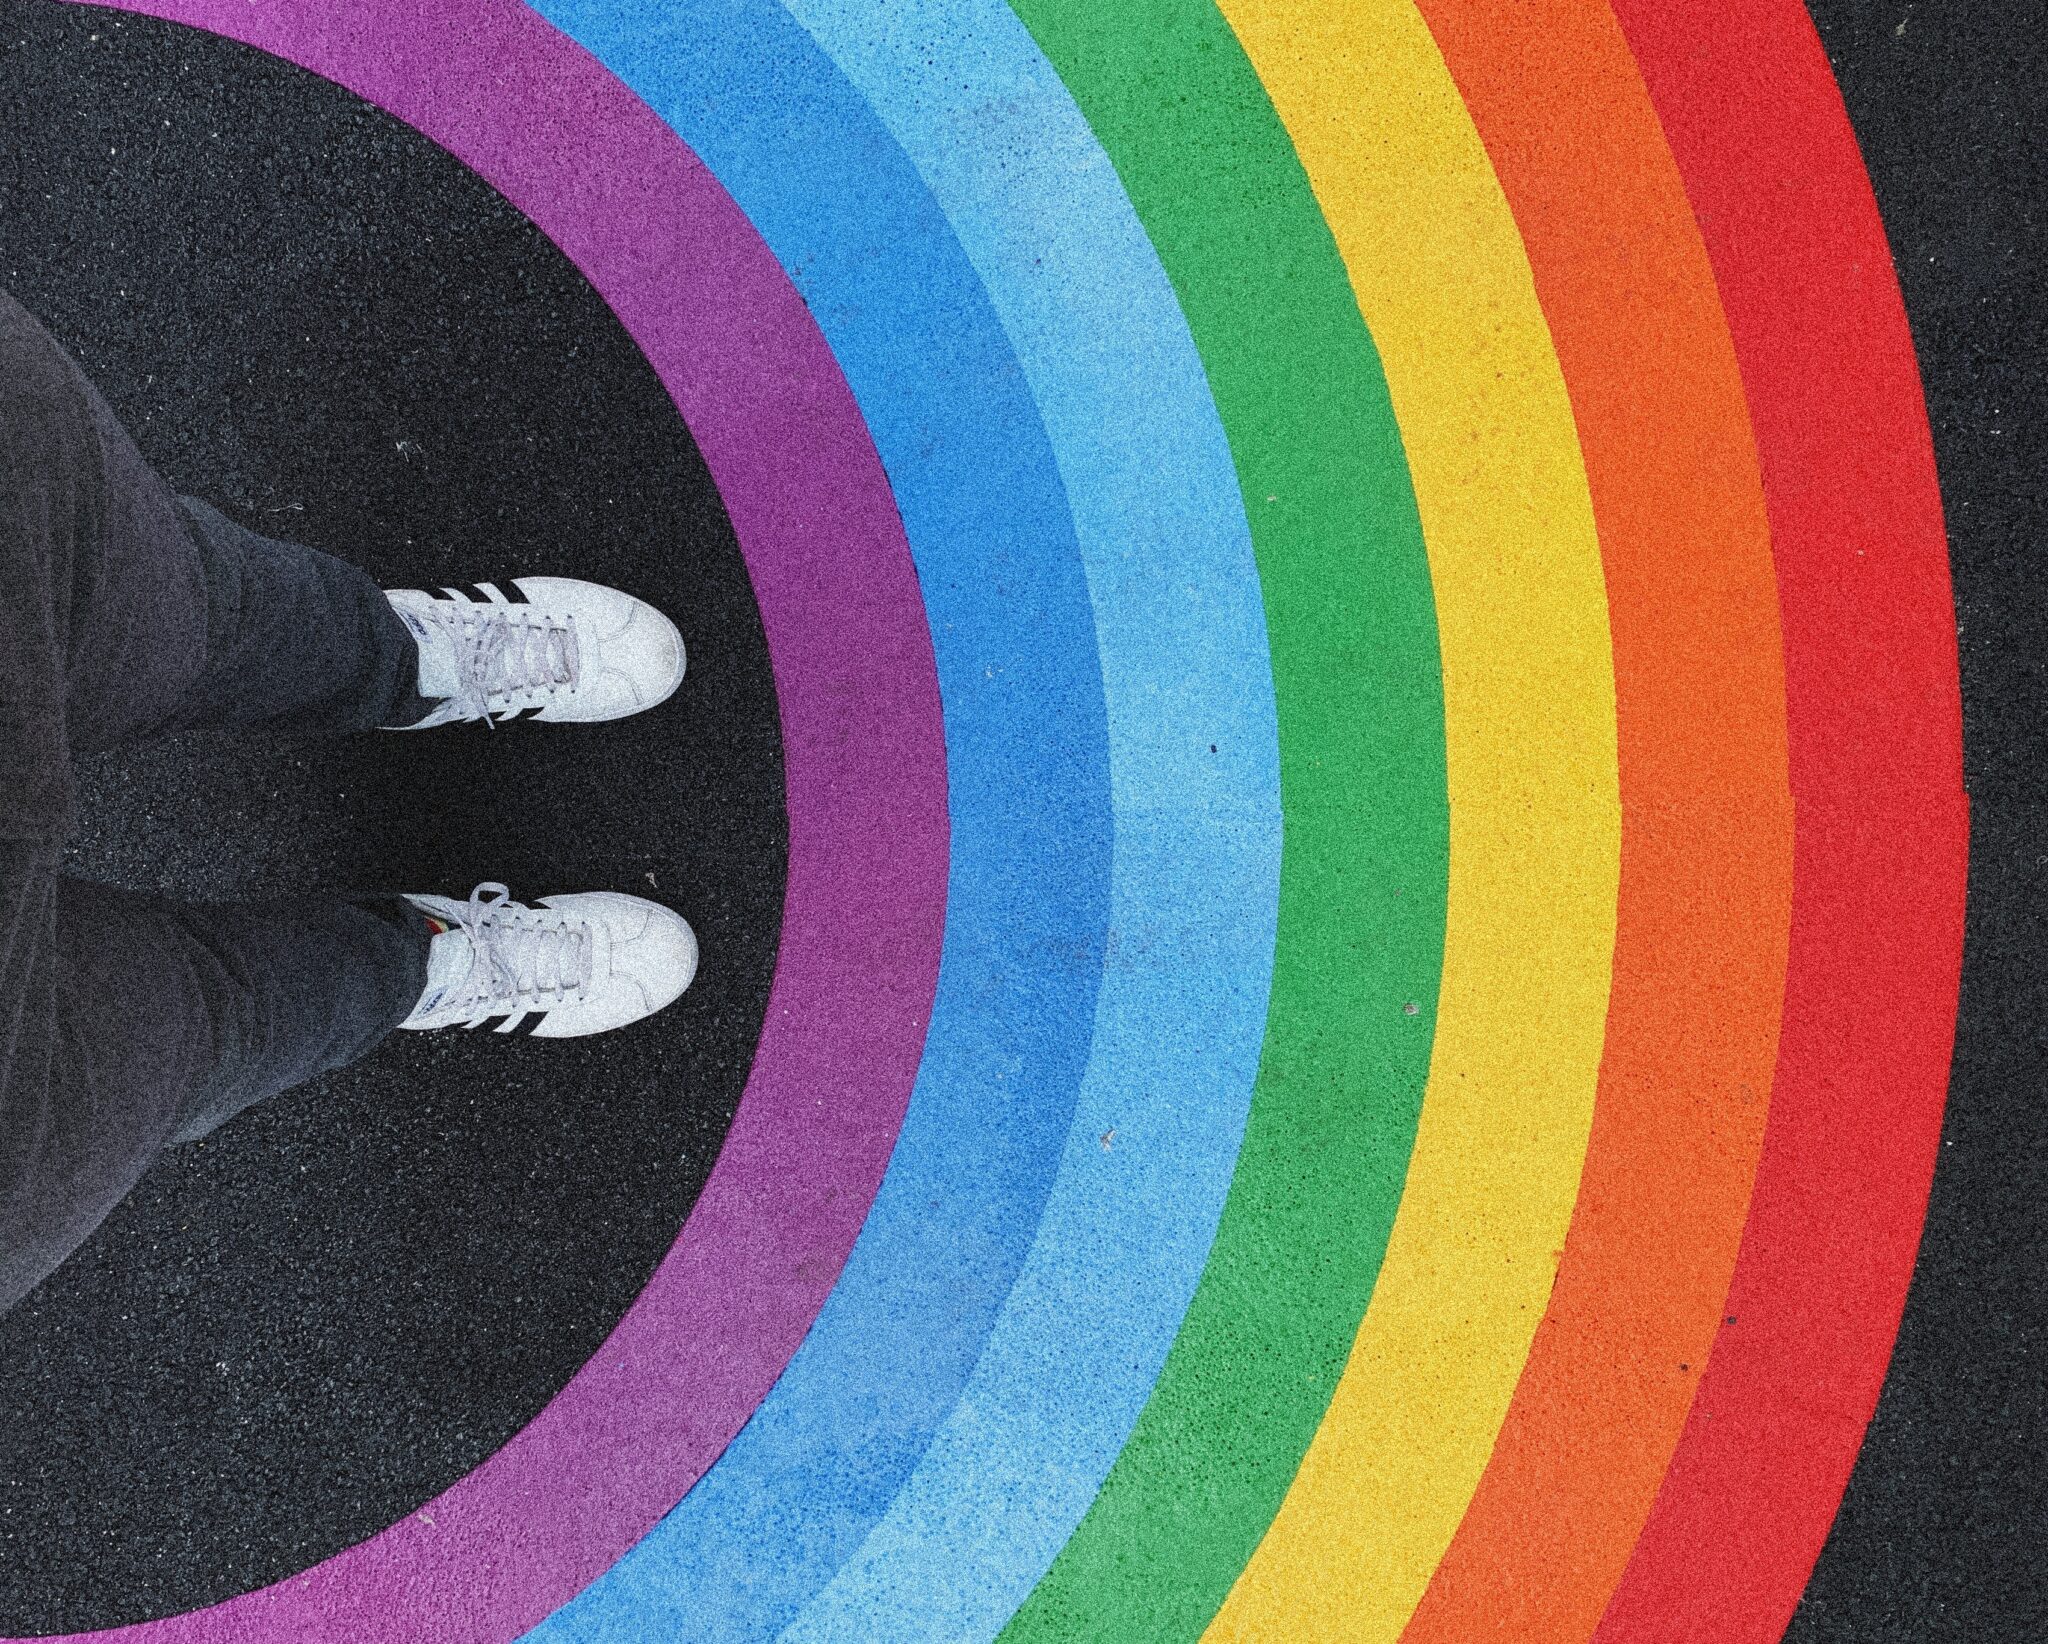 Триває набір на мікрогранти для діяльності ЛГБТКІА+ у Любліні